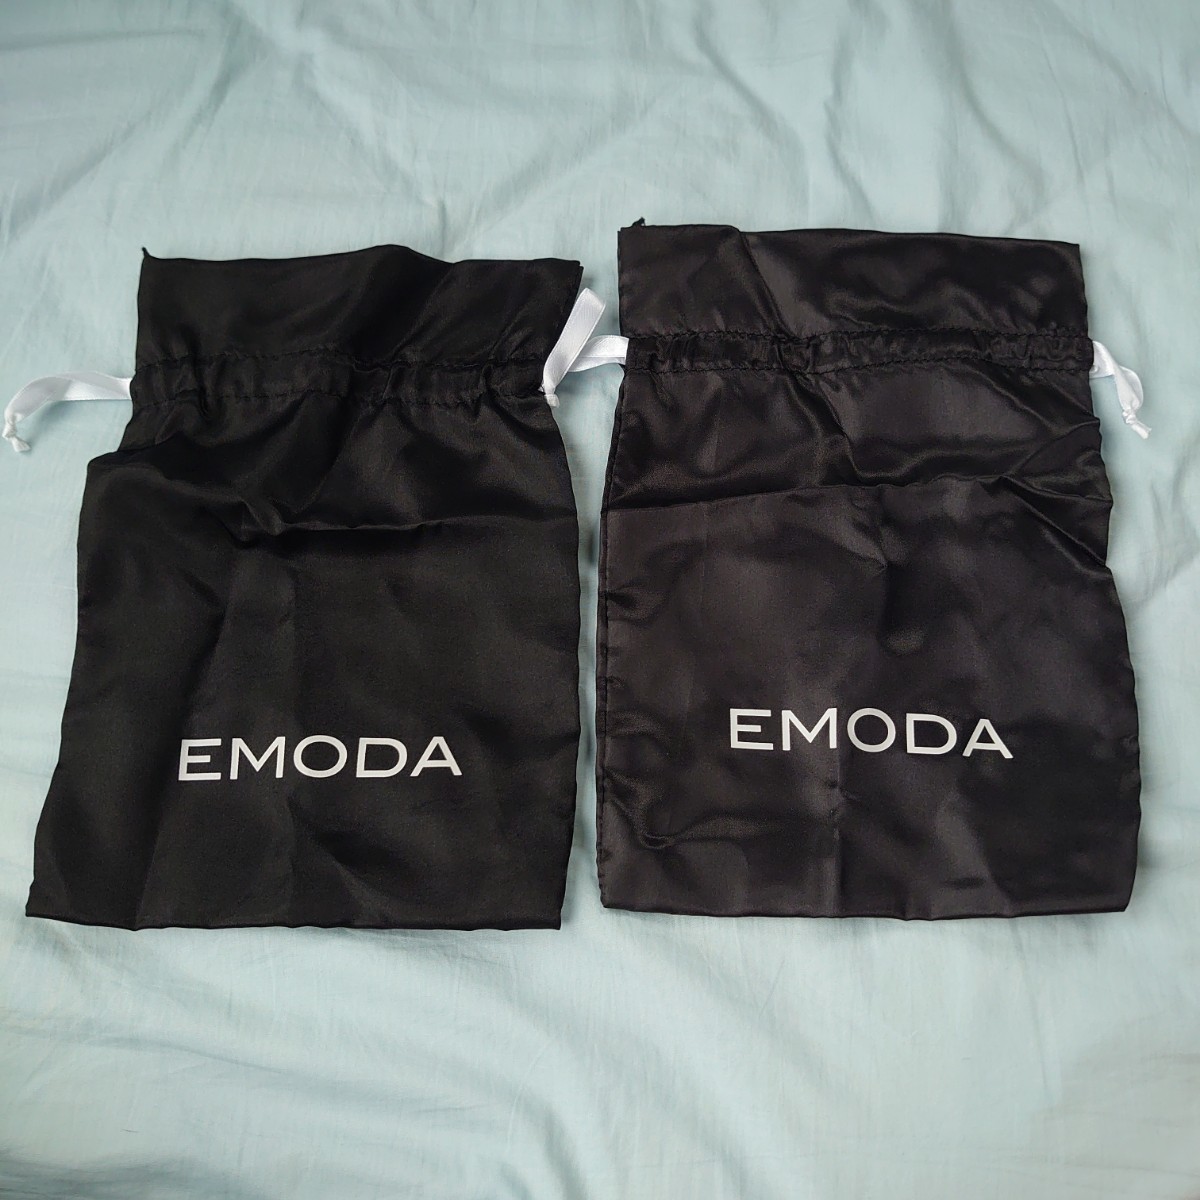 EMODA ショップ 巾着袋